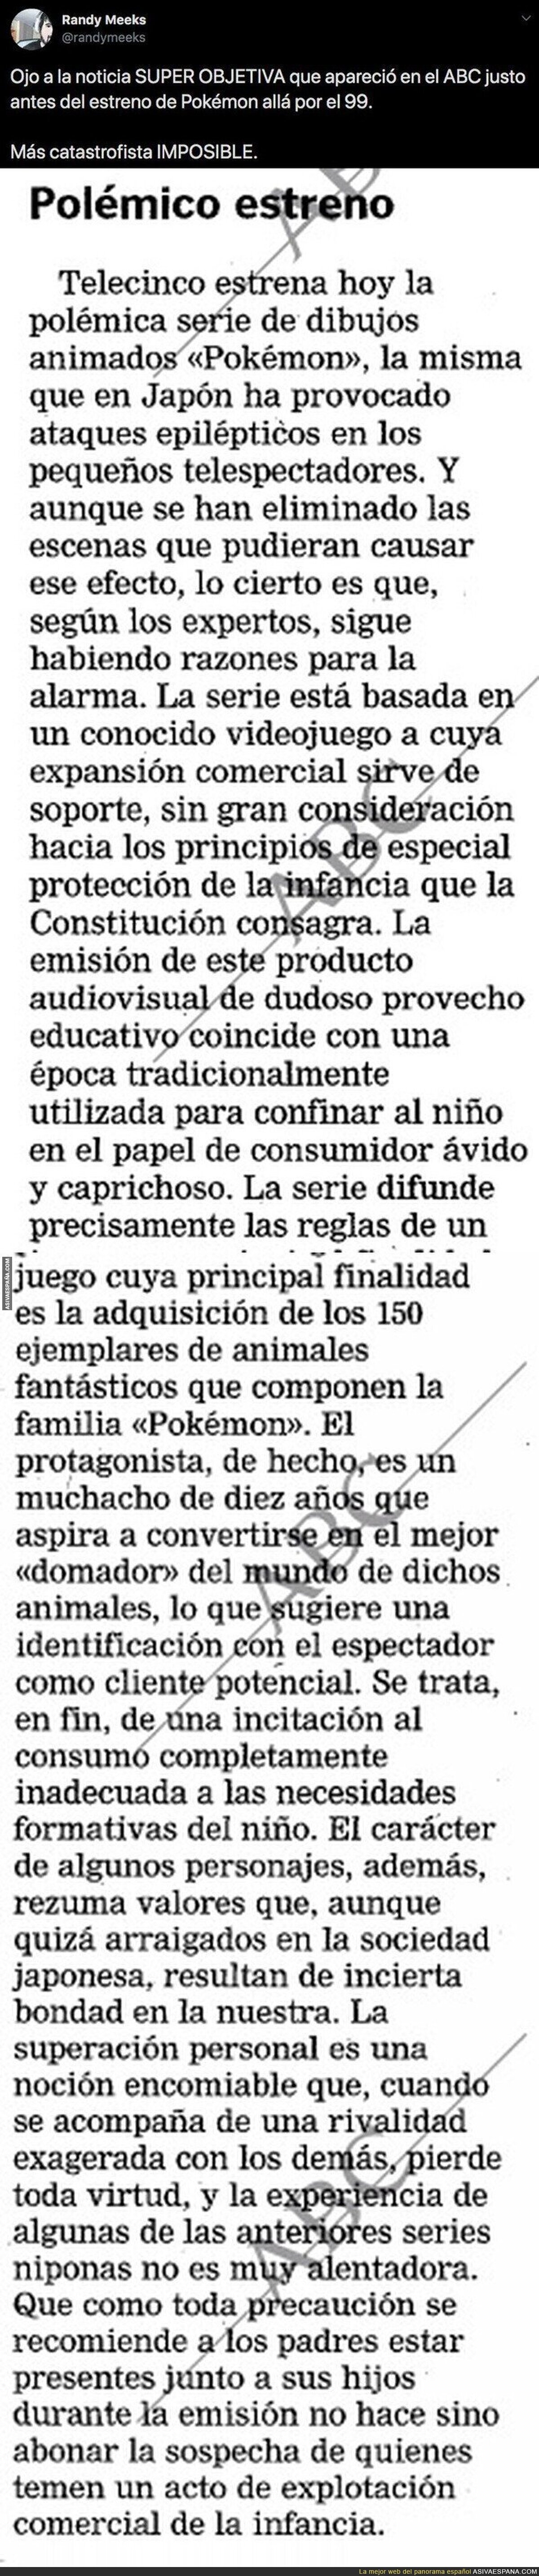 Atención a la crítica que hicieron de la serie Pokémon en el diario ABC en el año 1999 antes de que se estrenase en Telecinco